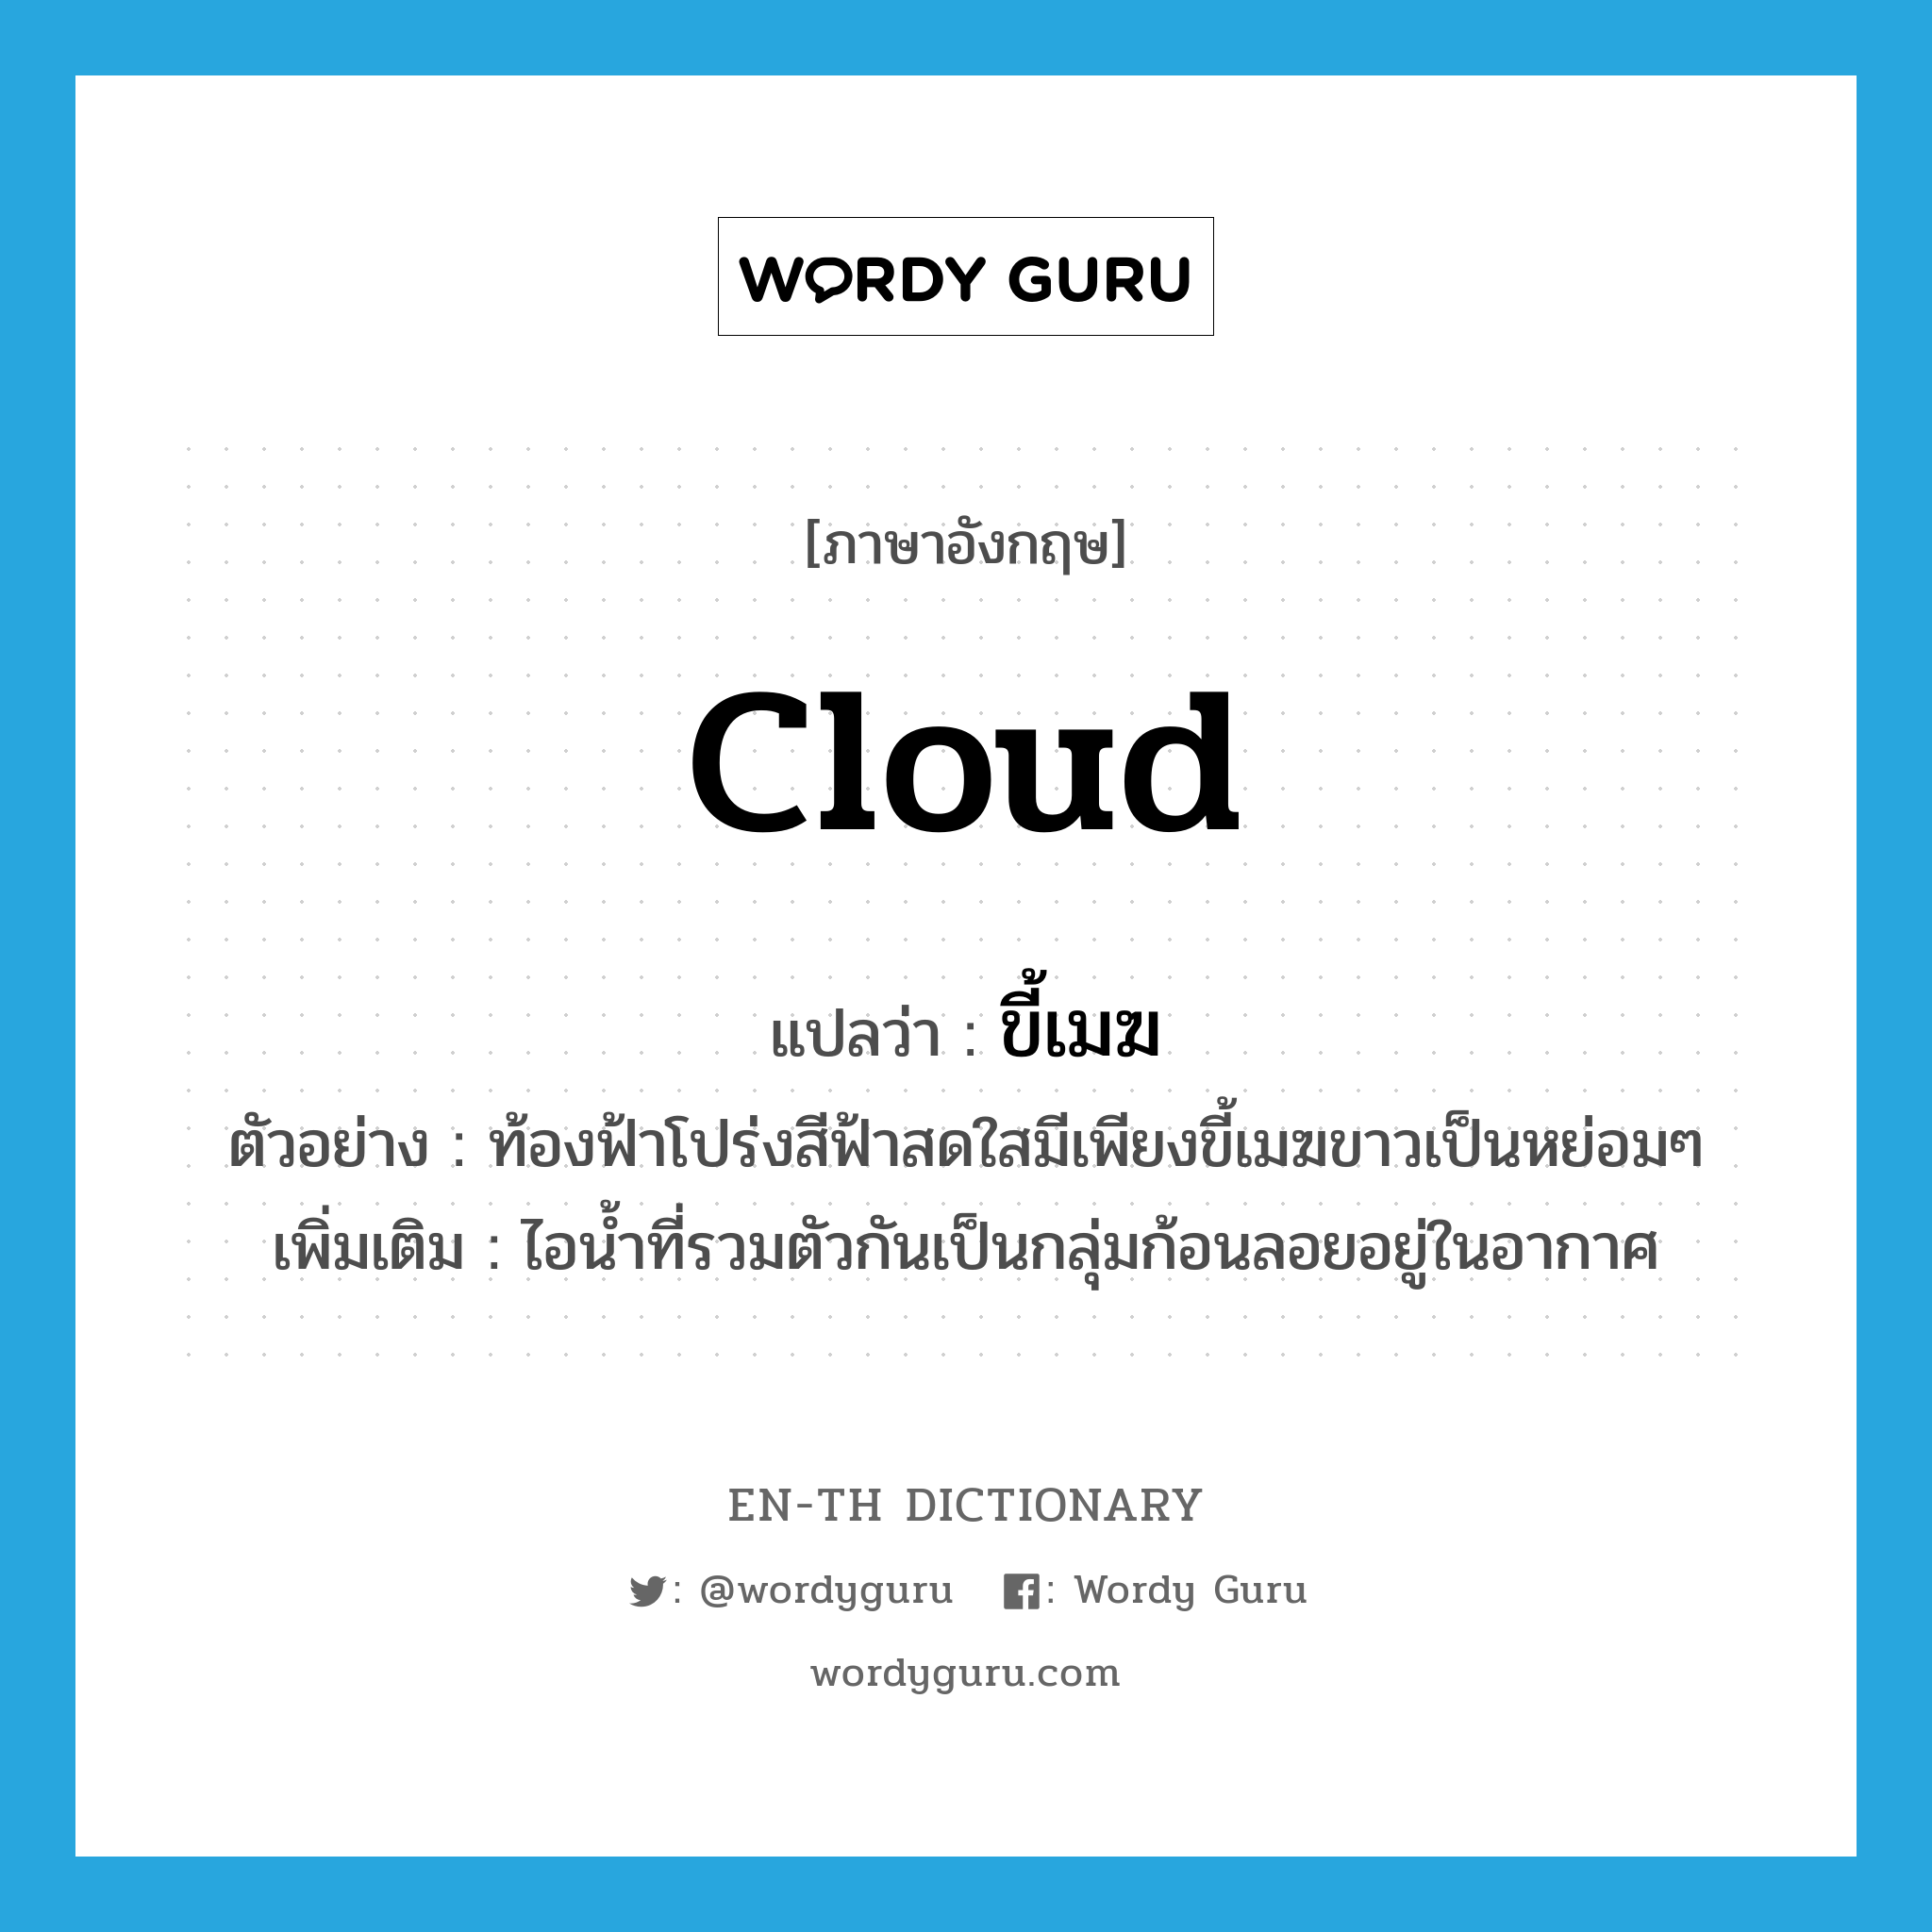 ขี้เมฆ ภาษาอังกฤษ?, คำศัพท์ภาษาอังกฤษ ขี้เมฆ แปลว่า cloud ประเภท N ตัวอย่าง ท้องฟ้าโปร่งสีฟ้าสดใสมีเพียงขี้เมฆขาวเป็นหย่อมๆ เพิ่มเติม ไอน้ำที่รวมตัวกันเป็นกลุ่มก้อนลอยอยู่ในอากาศ หมวด N